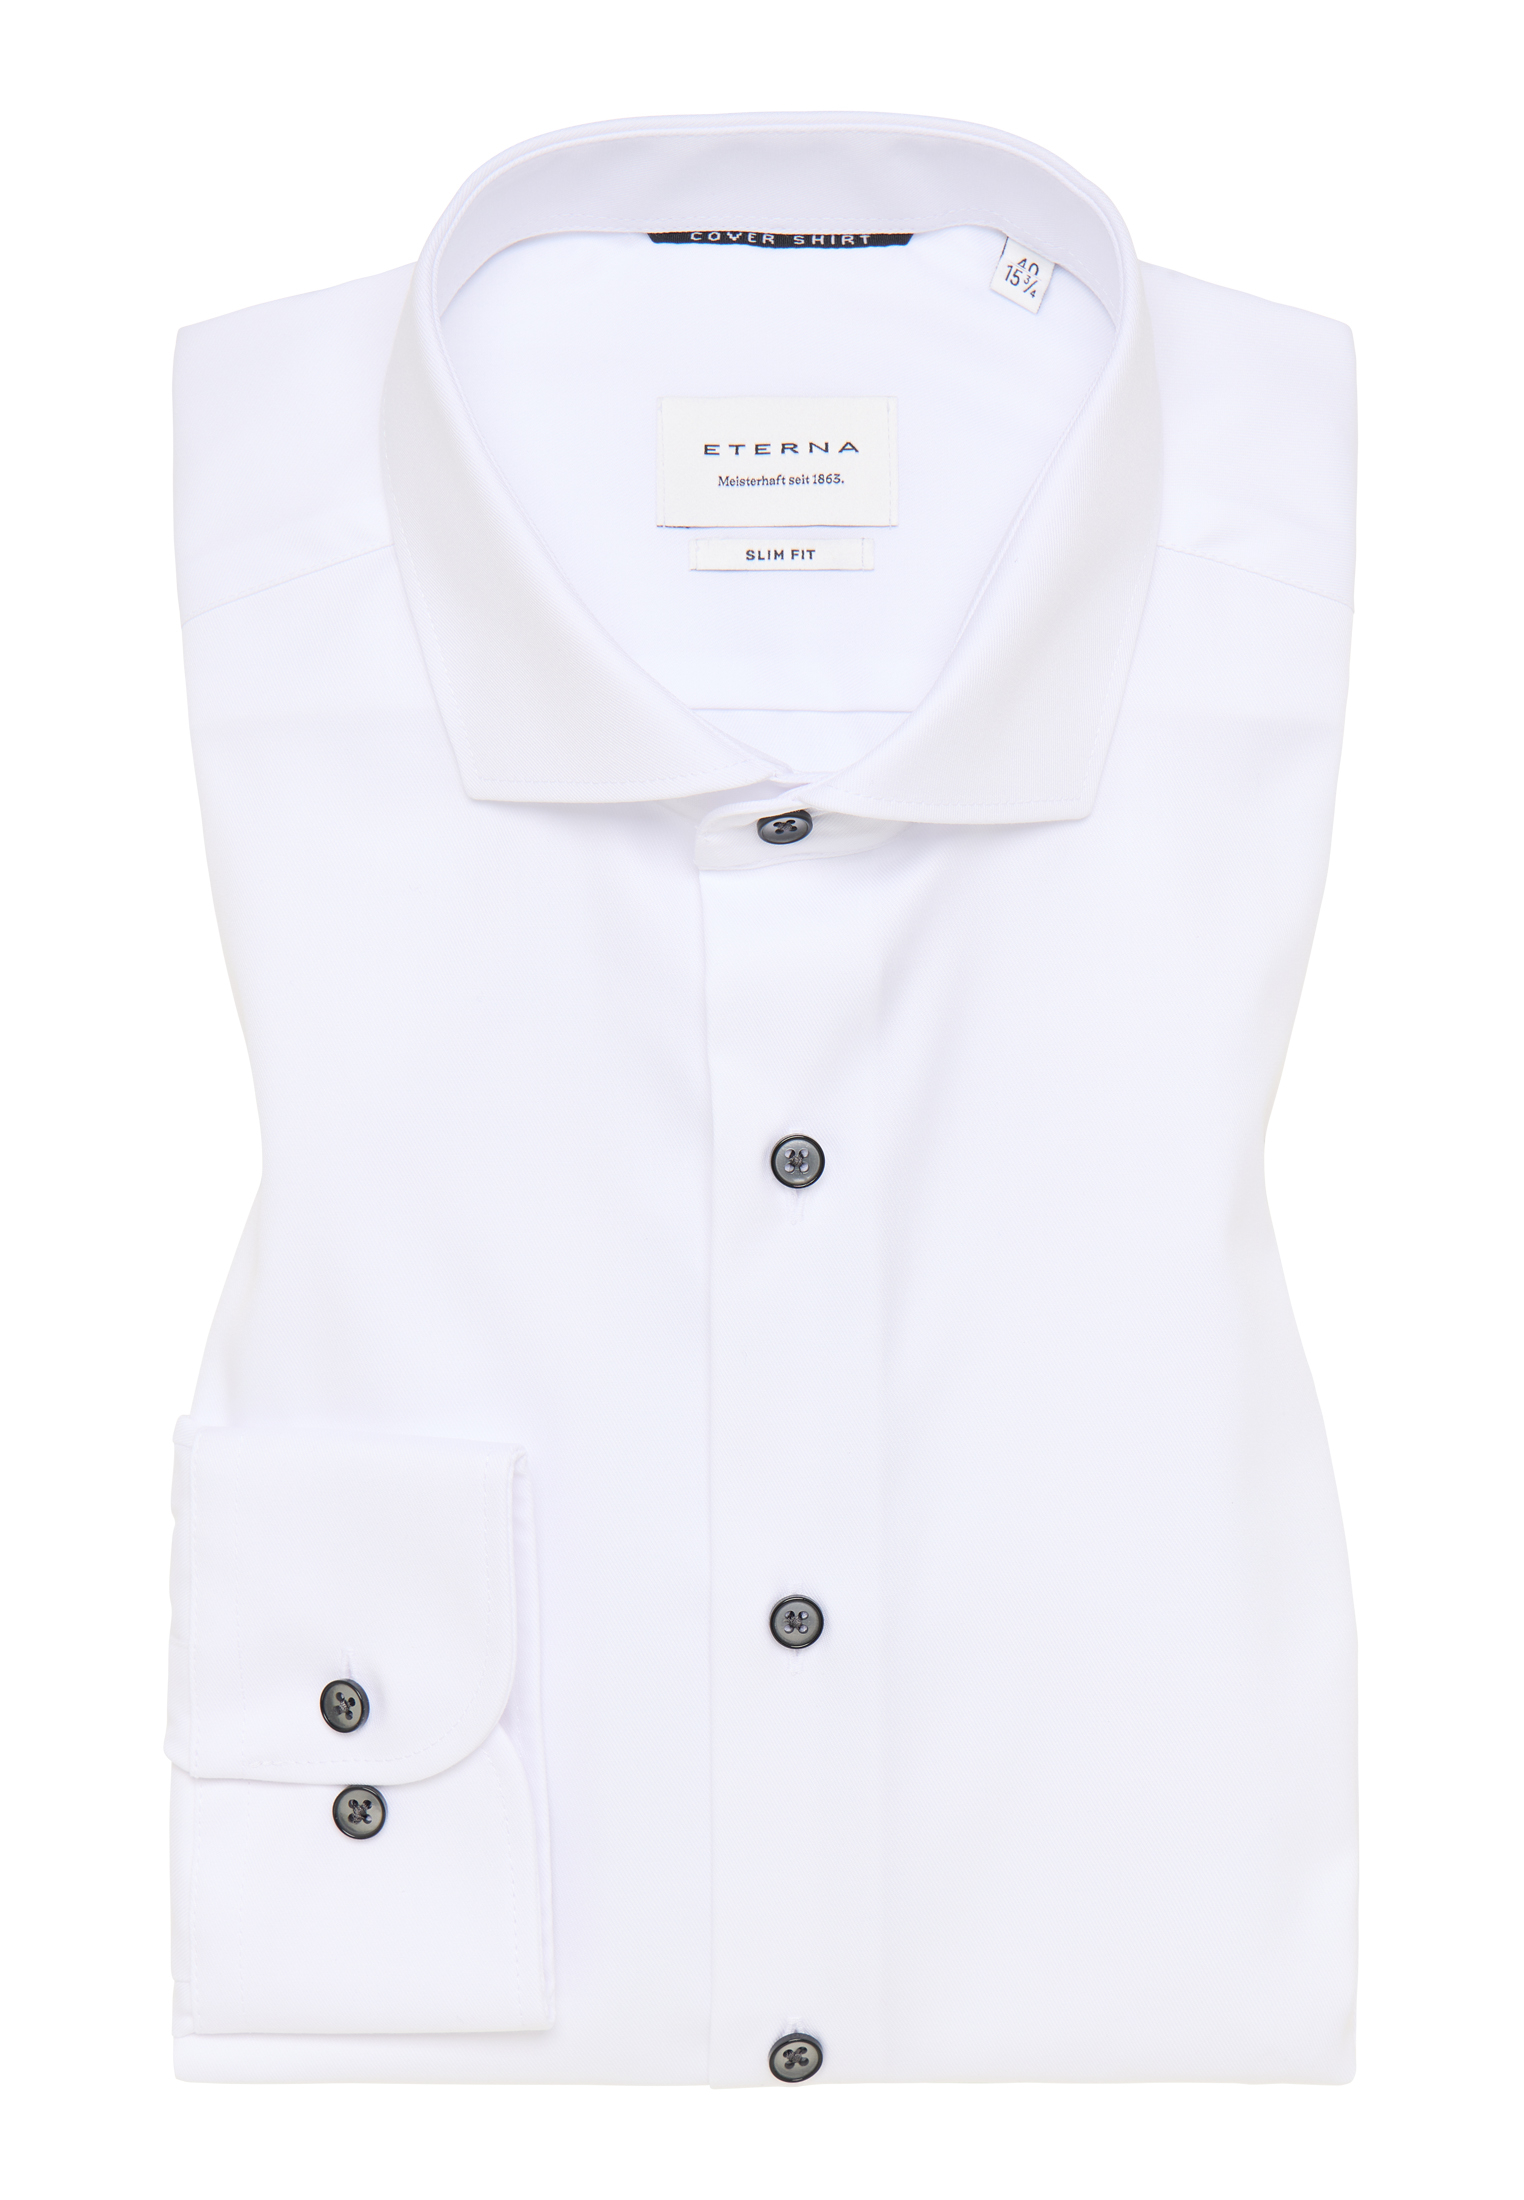 in Cover | | 1SH05554-00-01-40-1/1 Shirt SLIM unifarben weiß | 40 weiß | Langarm FIT